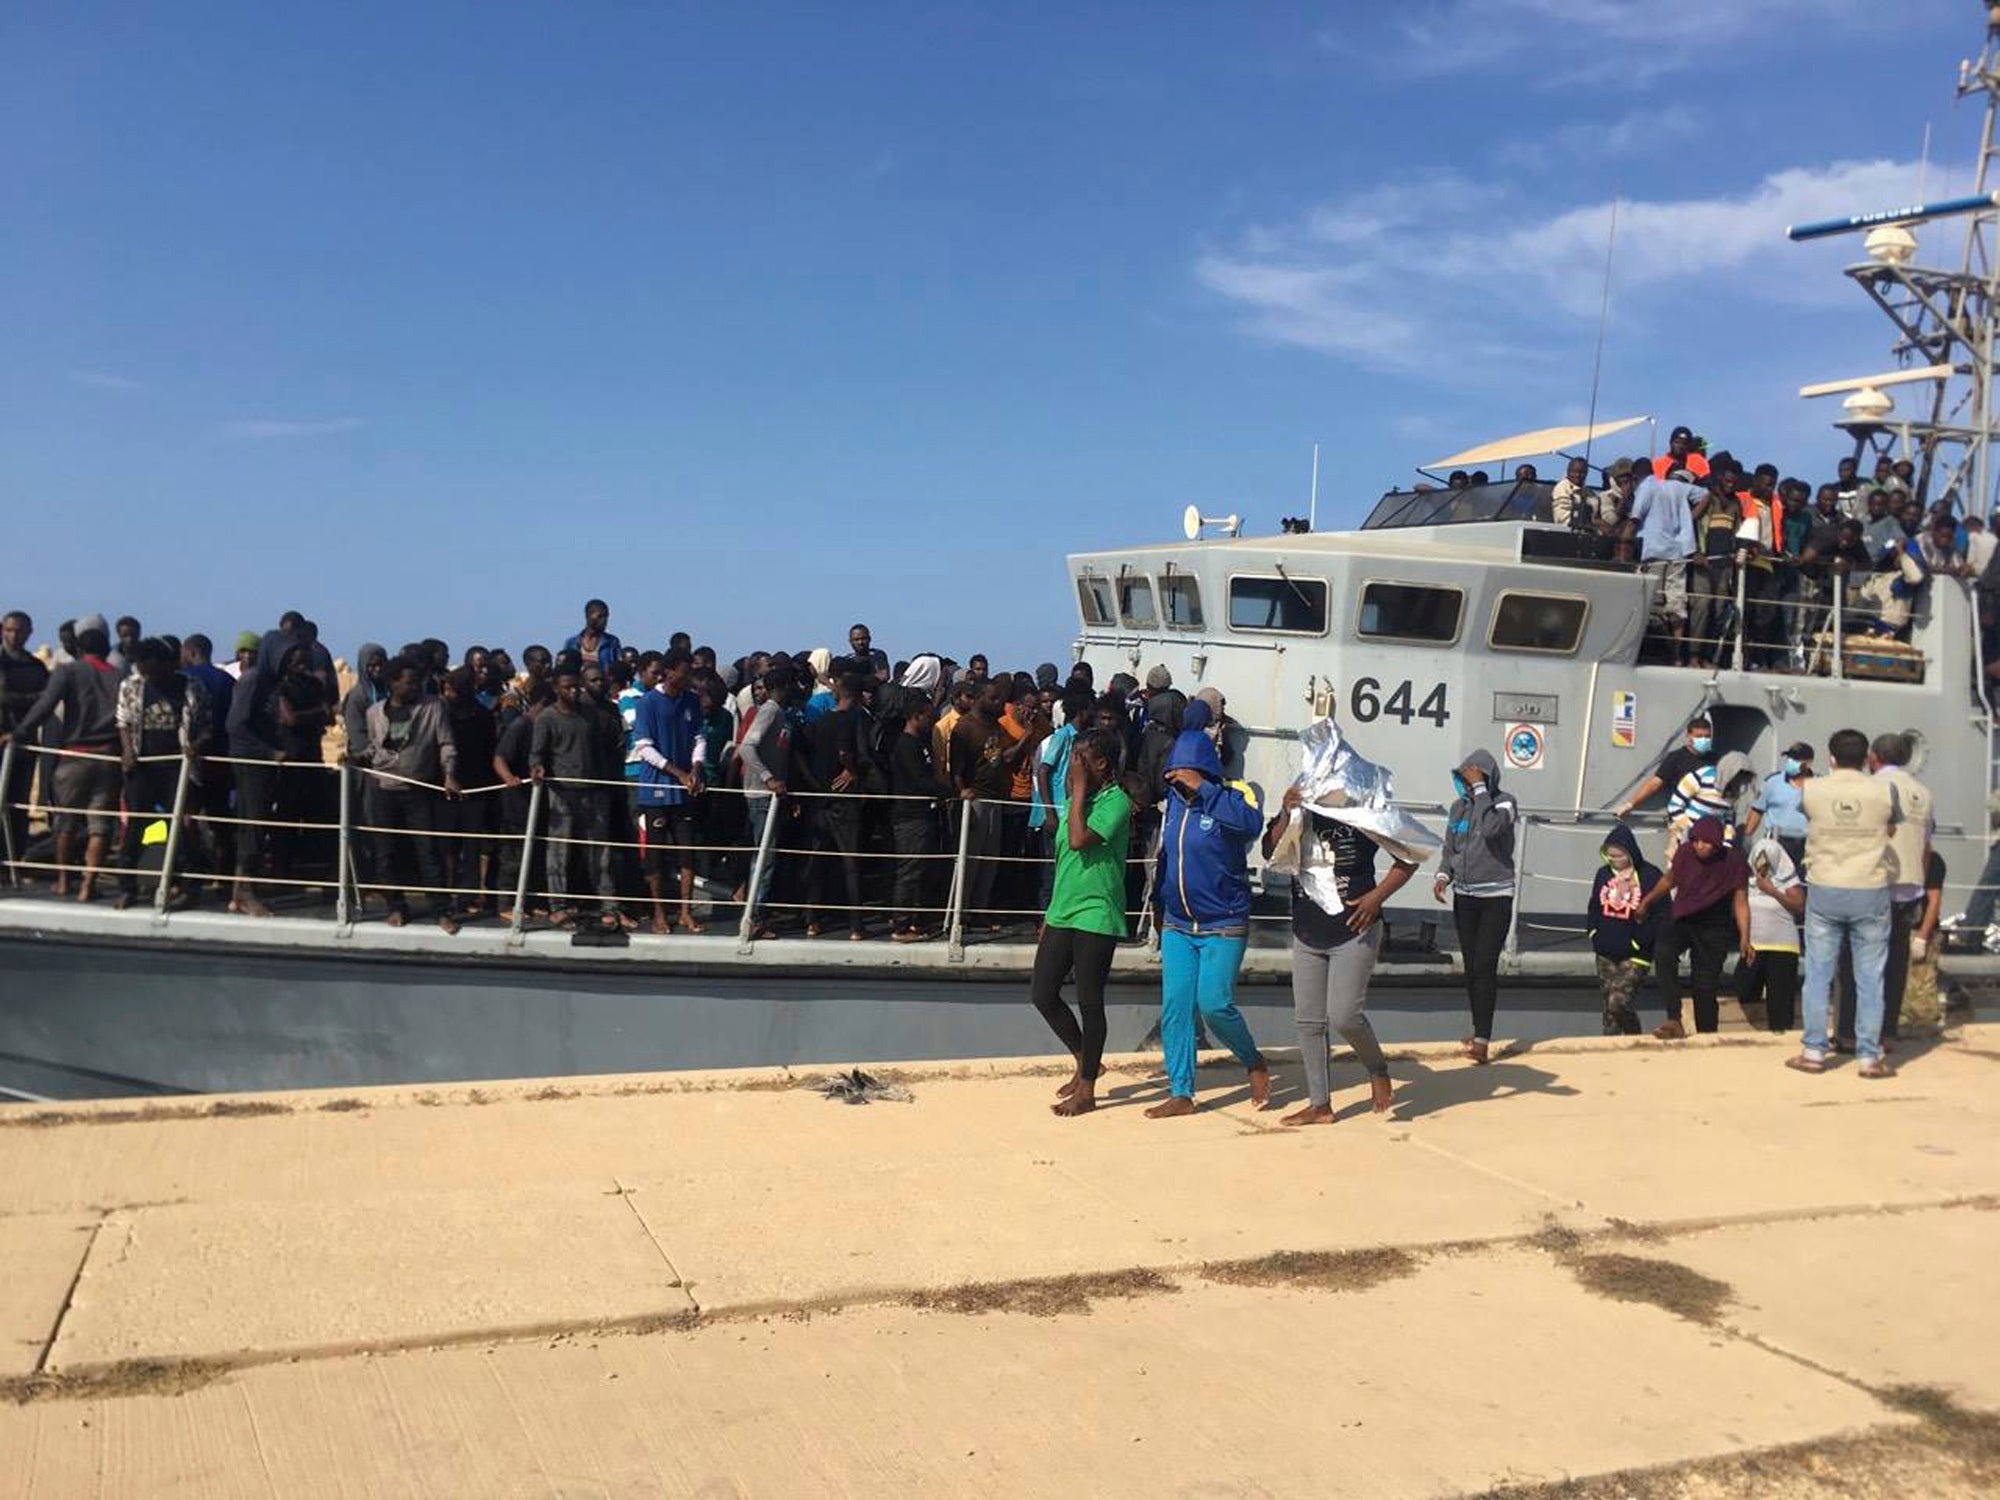 صورة نشرها "خفر السواحل الليبي" تُظهر أشخاص غادروا ليبيا بعد اعتراضهم في عرض البحر، 24 يونيو/حزيران 2018. ©2018 خفر السواحل الليبي عبر أسوشيتد برس